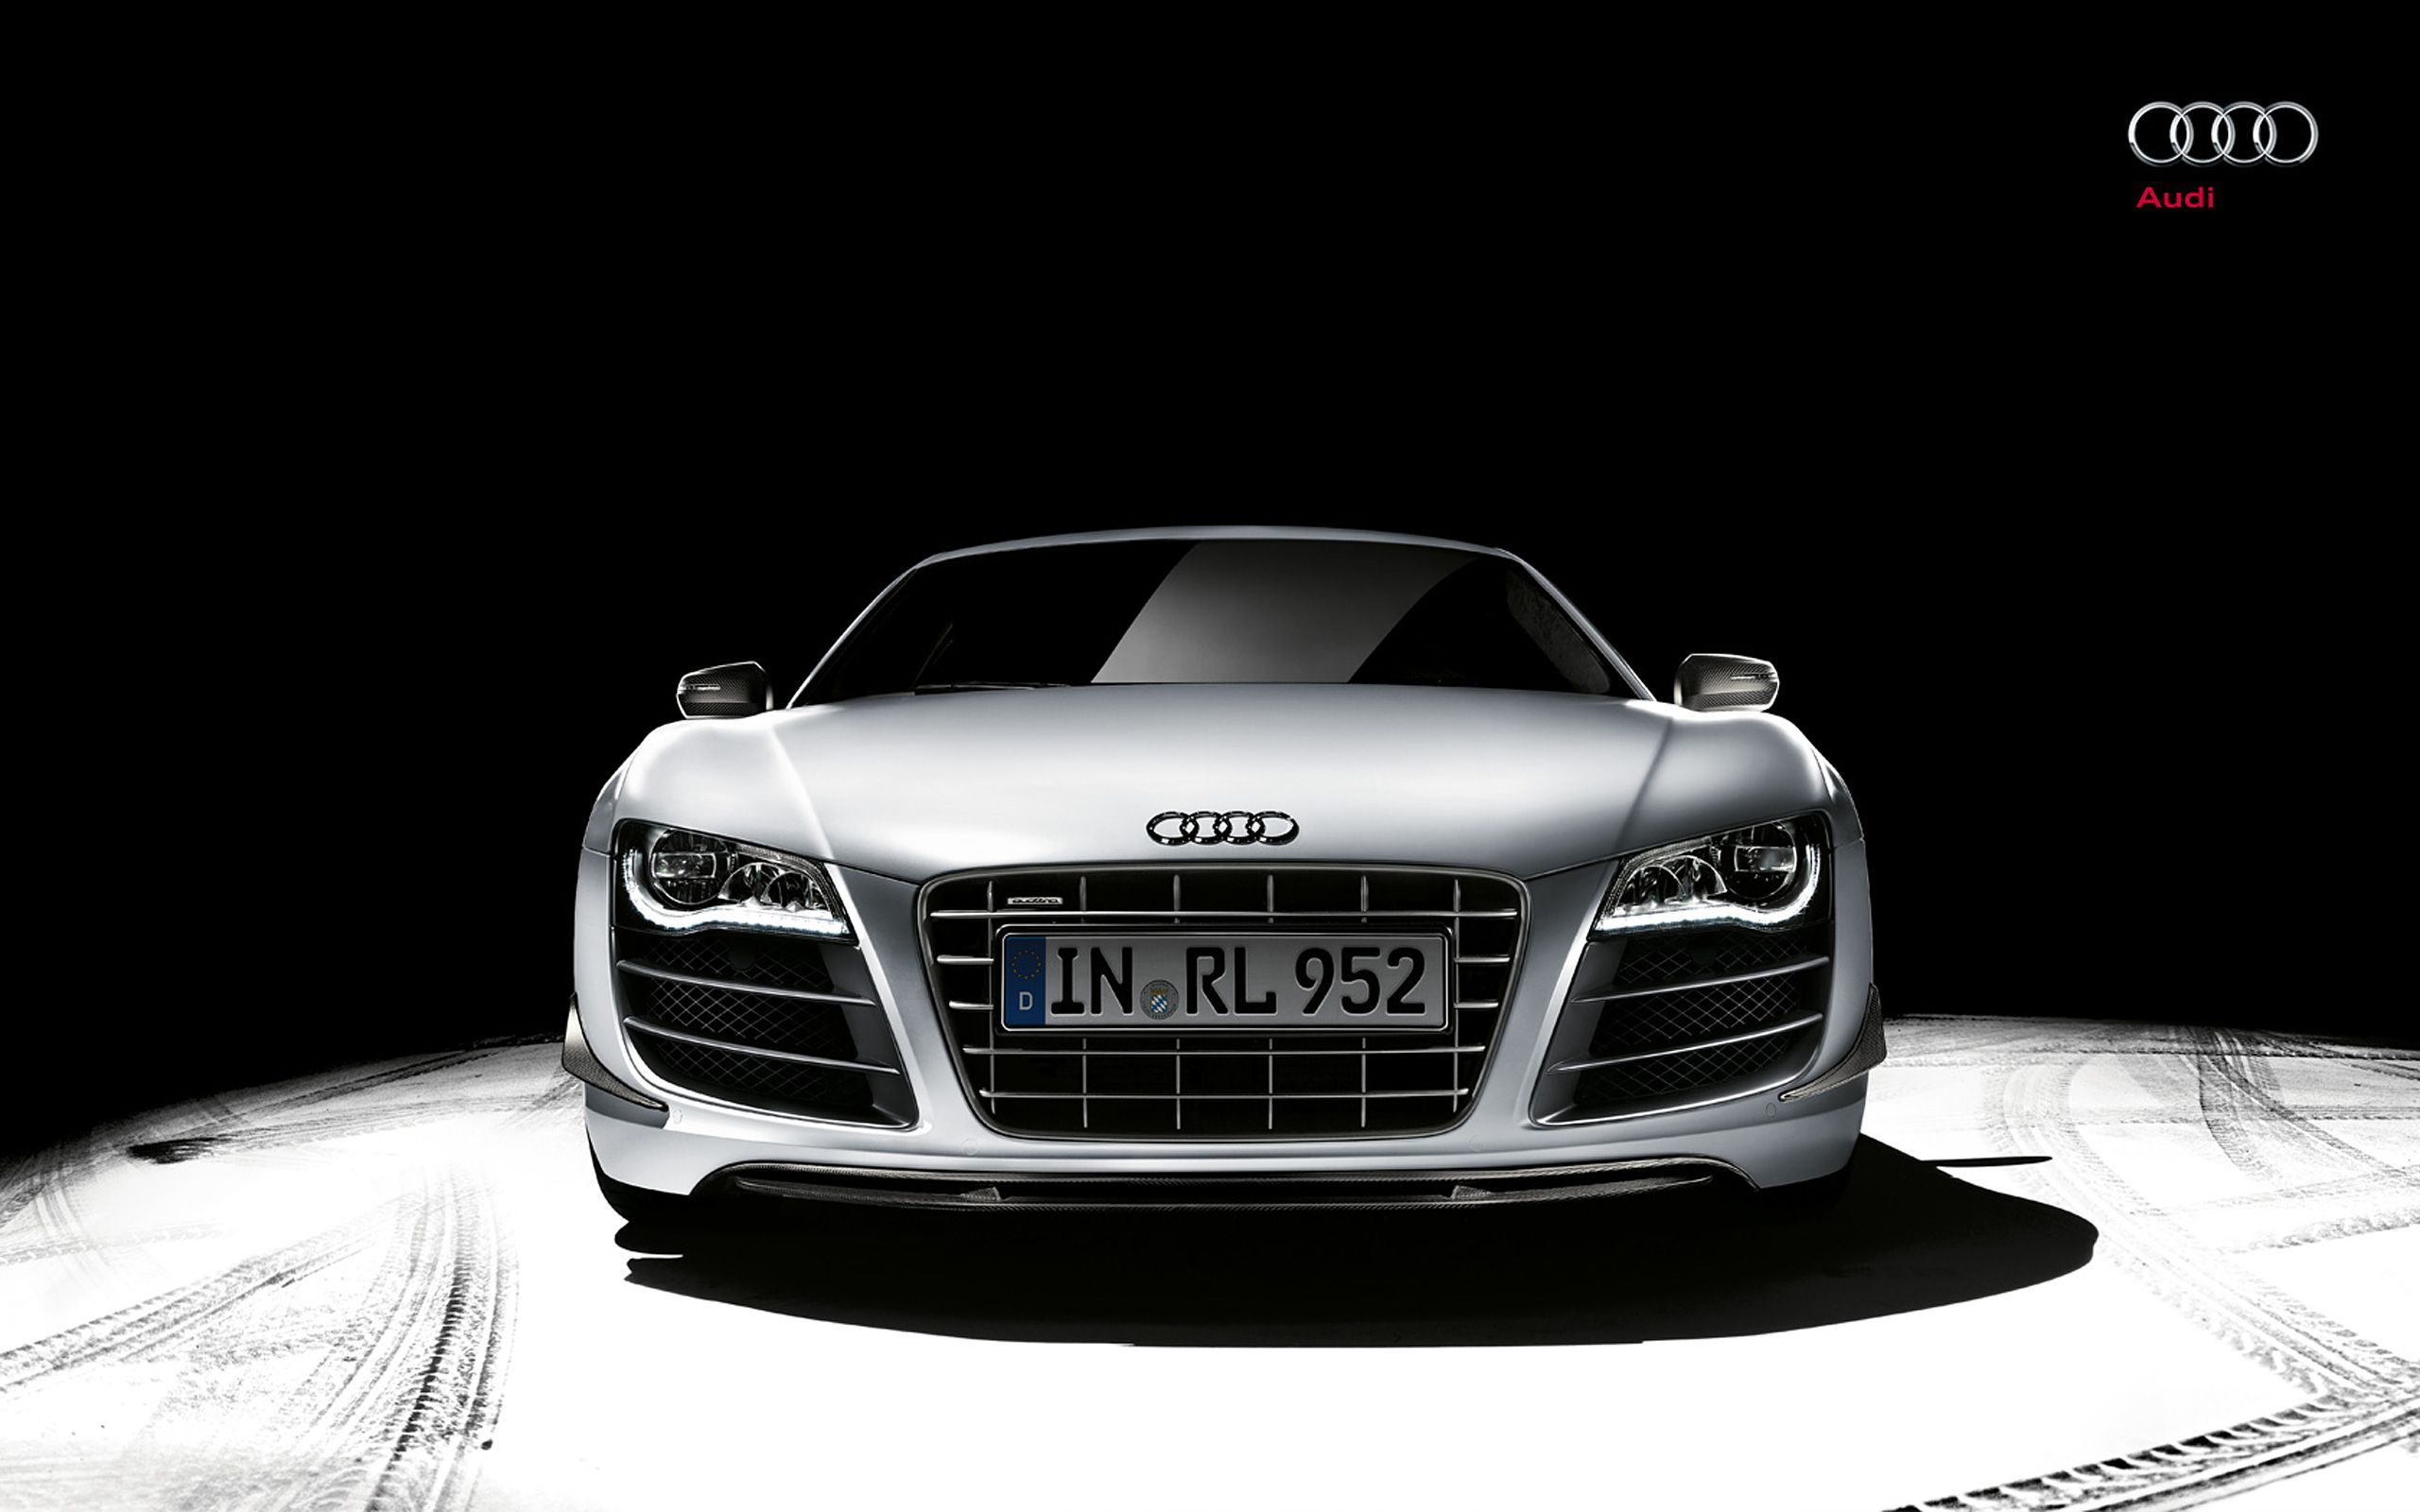 Fonds d'écran Audi R8 : tous les wallpapers Audi R8